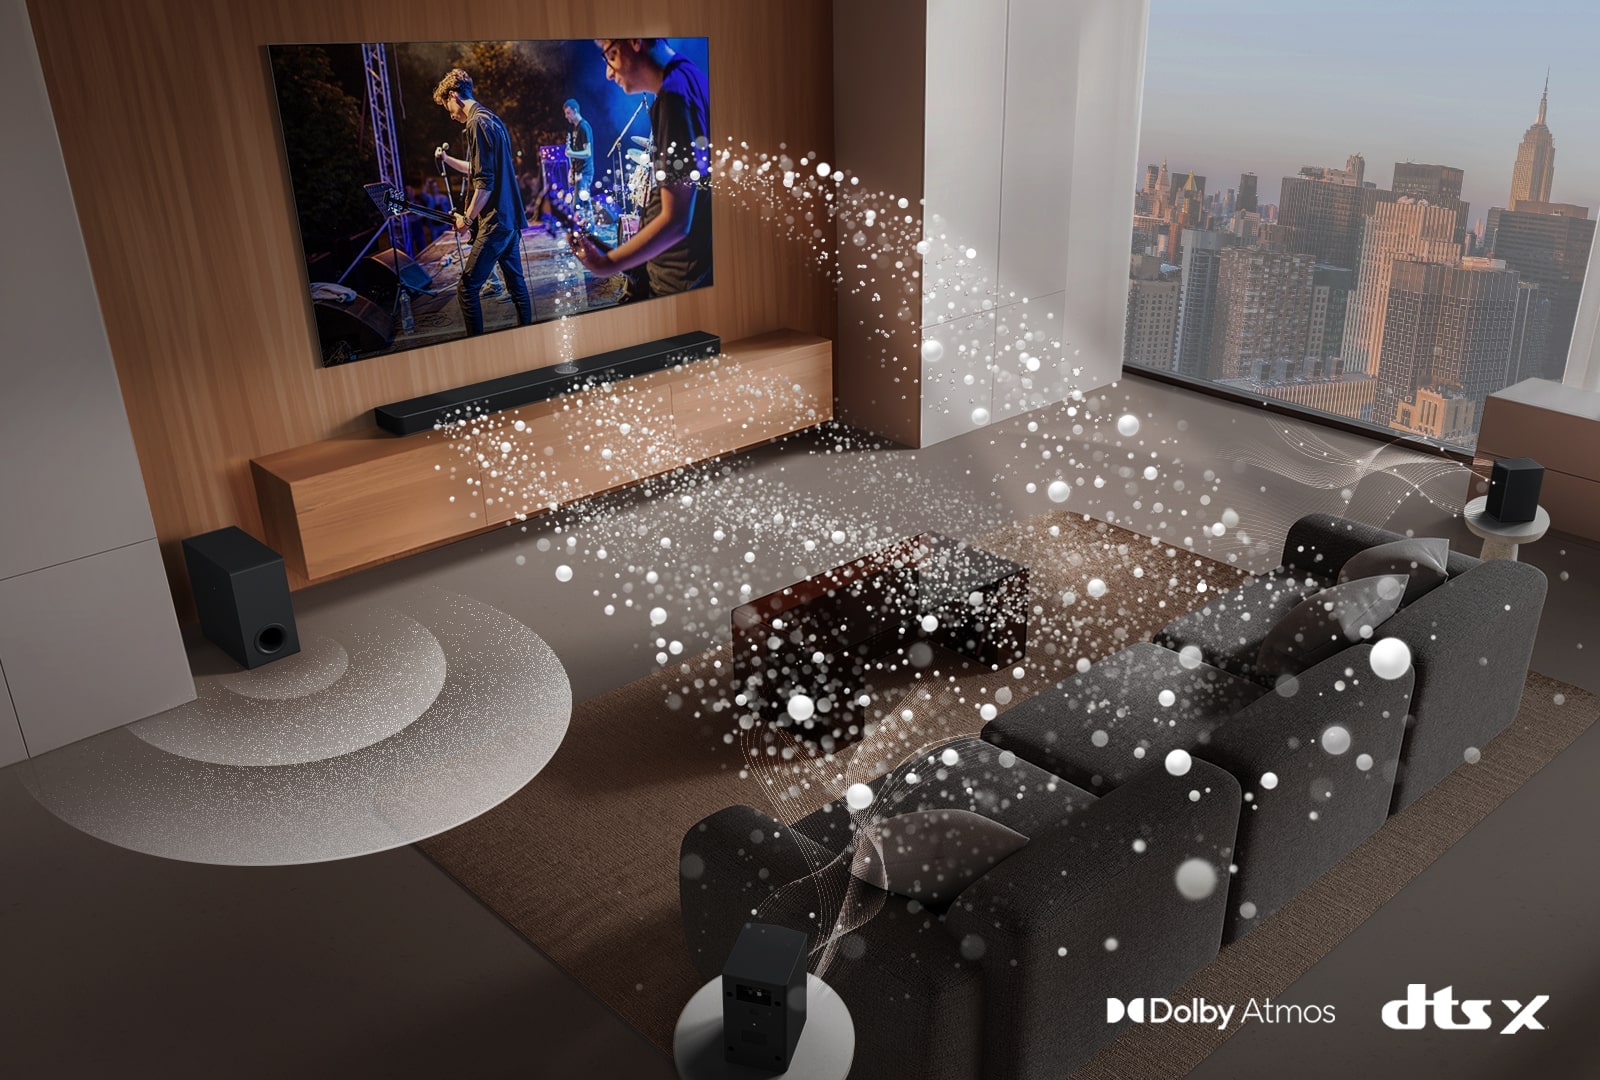 LG Soundbar, LG TV, hintere Lautsprecher und ein Subwoofer befinden sich in einem Wohnzimmer in einem Wolkenkratzer und spielen eine Musikaufführung. Weiße, aus Tröpfchen bestehende Klangwellen werden von der Soundbar projiziert und um das Sofa geschlungen. Ein Subwoofer erzeugt einen Klangeffekt von unten. Dolby Atmos-Logo DTS X-Logo